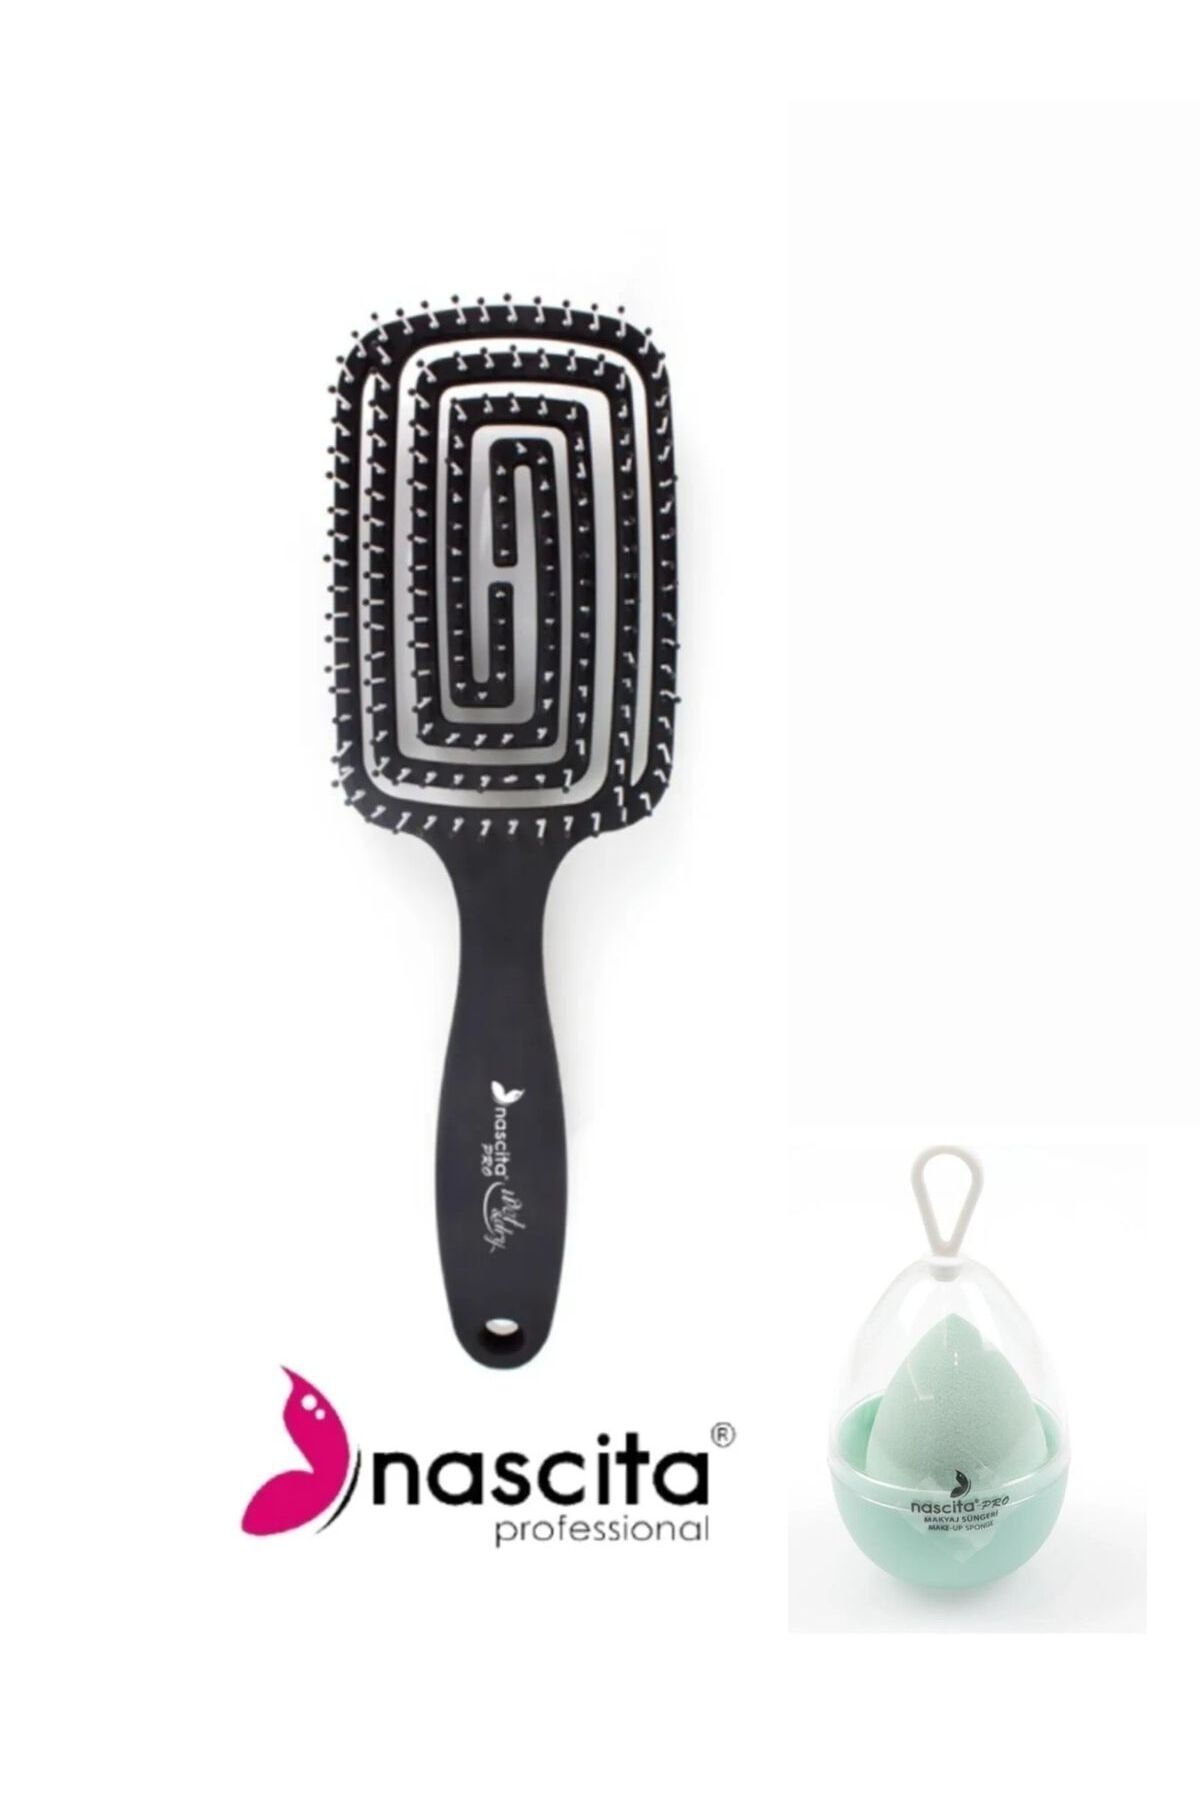 Nascita Pro Üç Boyutlu Saç Fırçası Pro 10 & Kutulu Yumurta Makyaj Süngeri